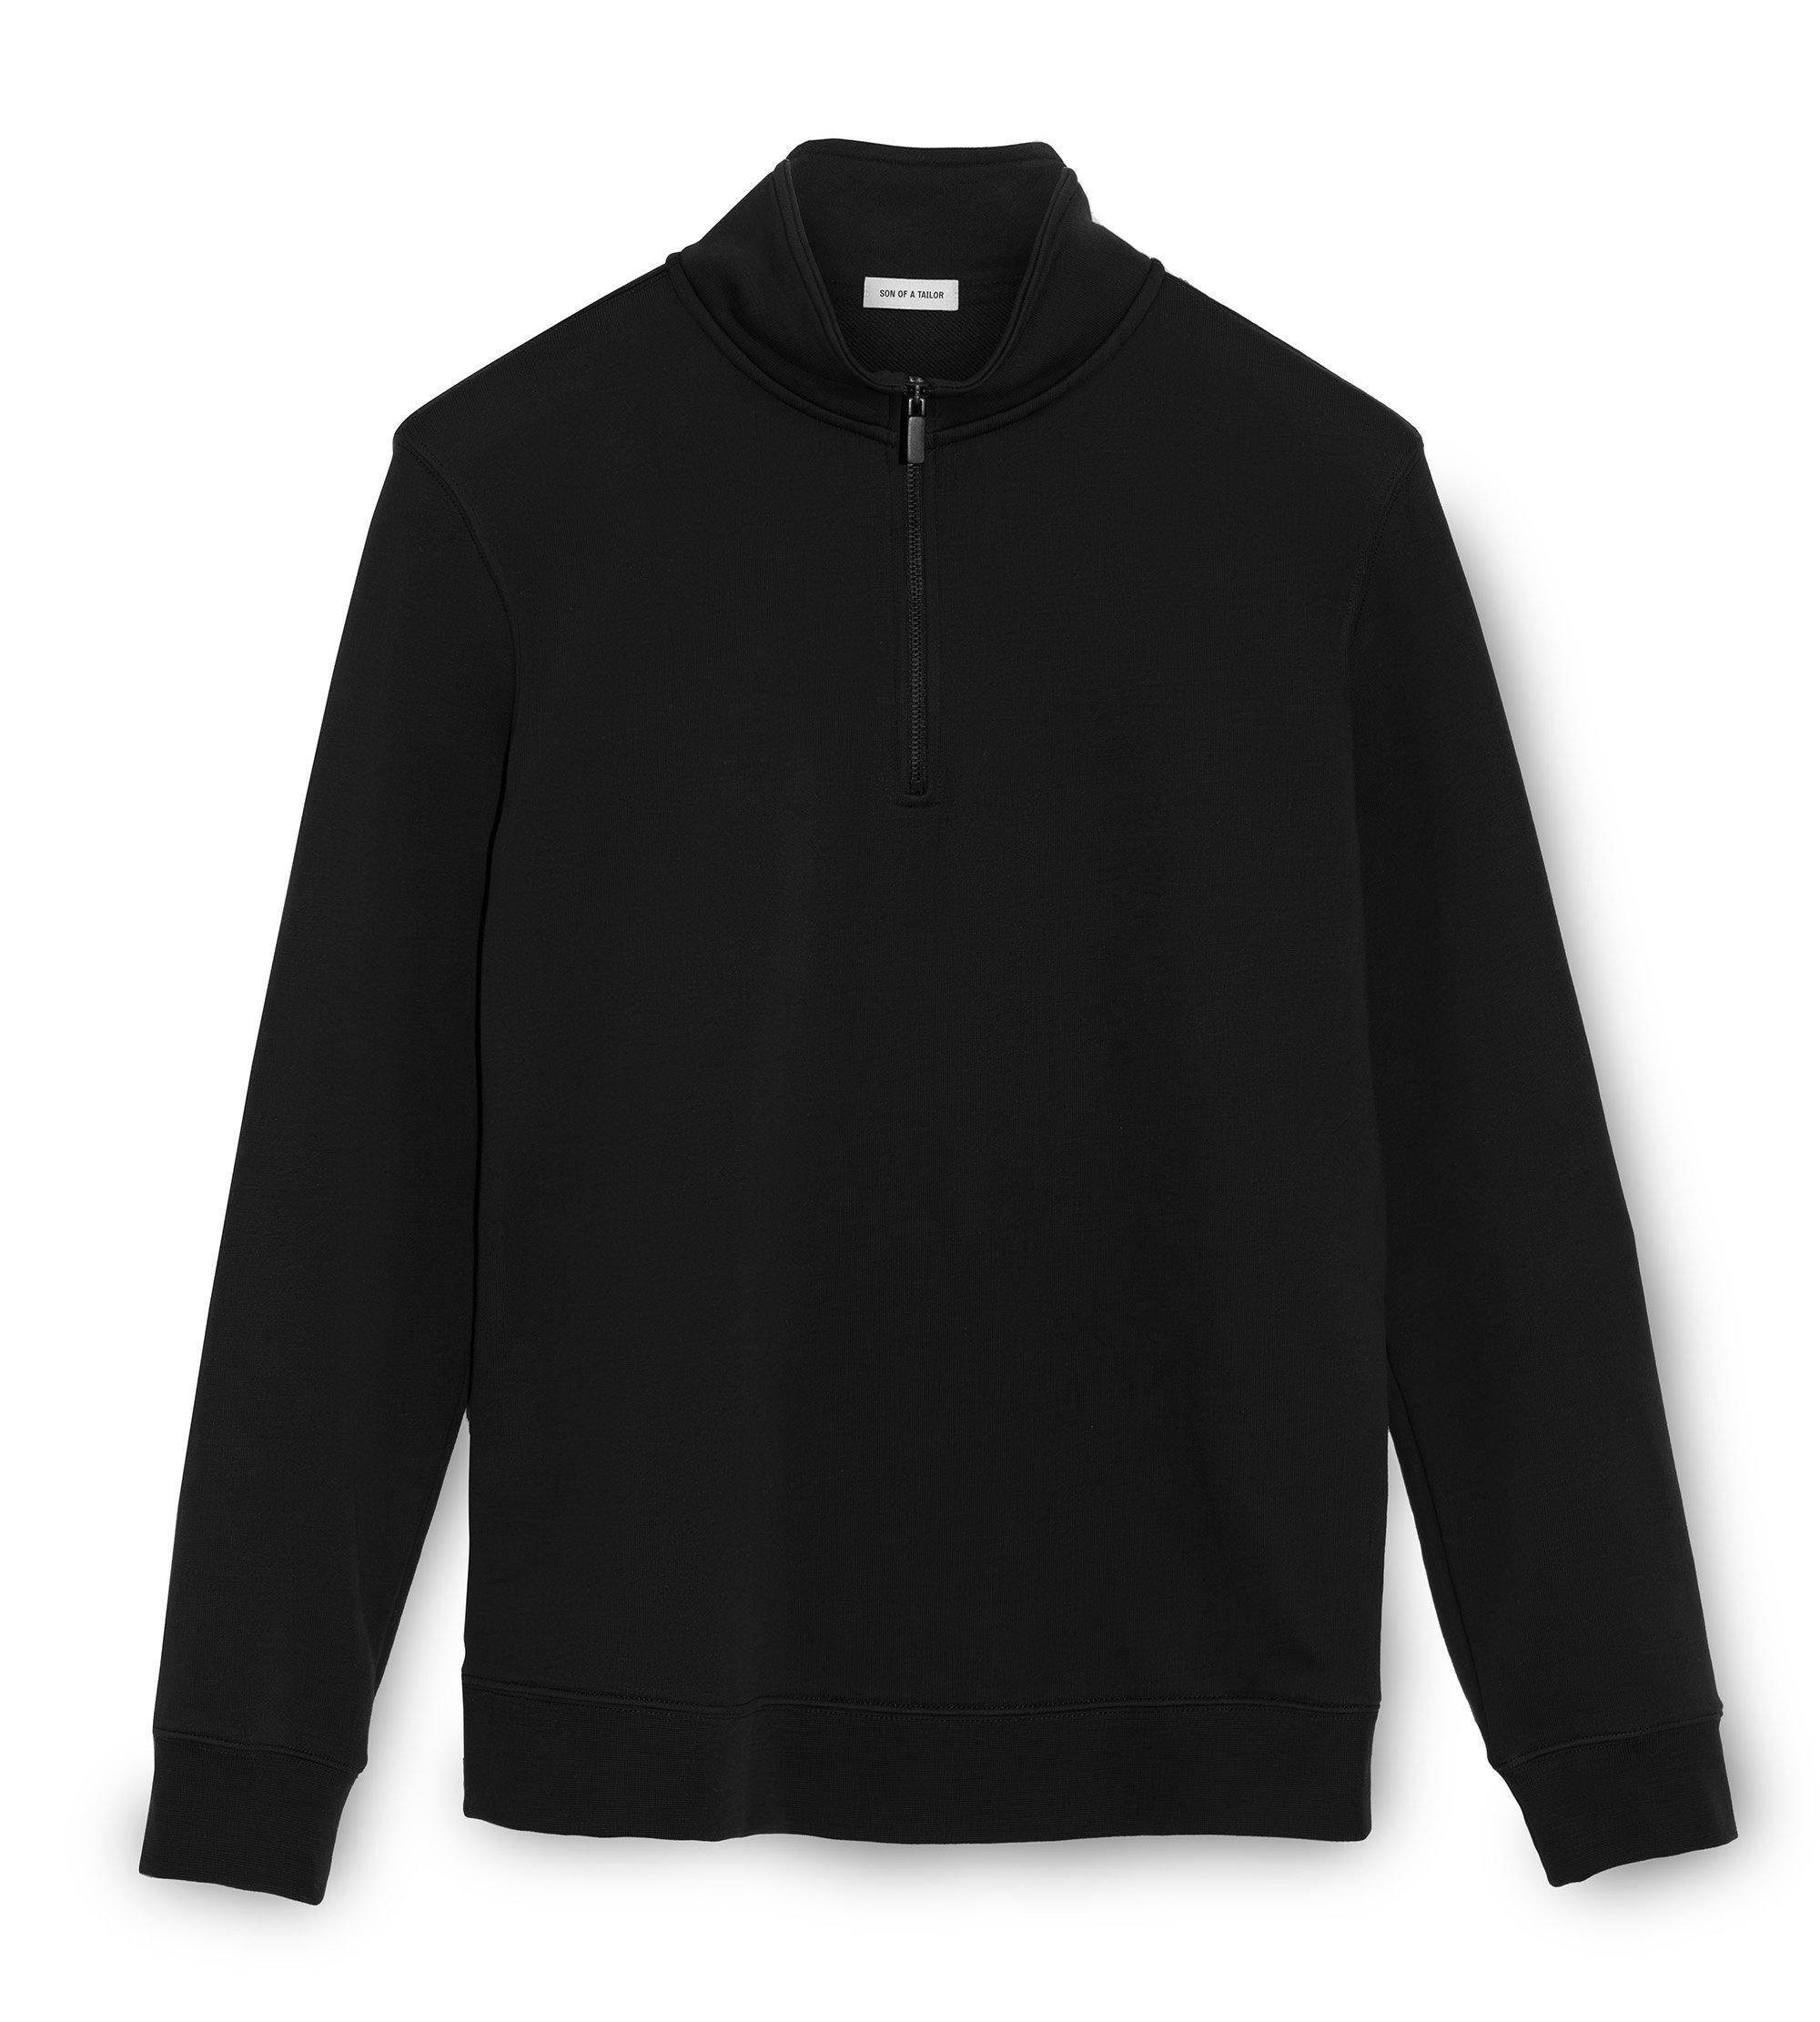 Black Half Zipper Sweatshirt